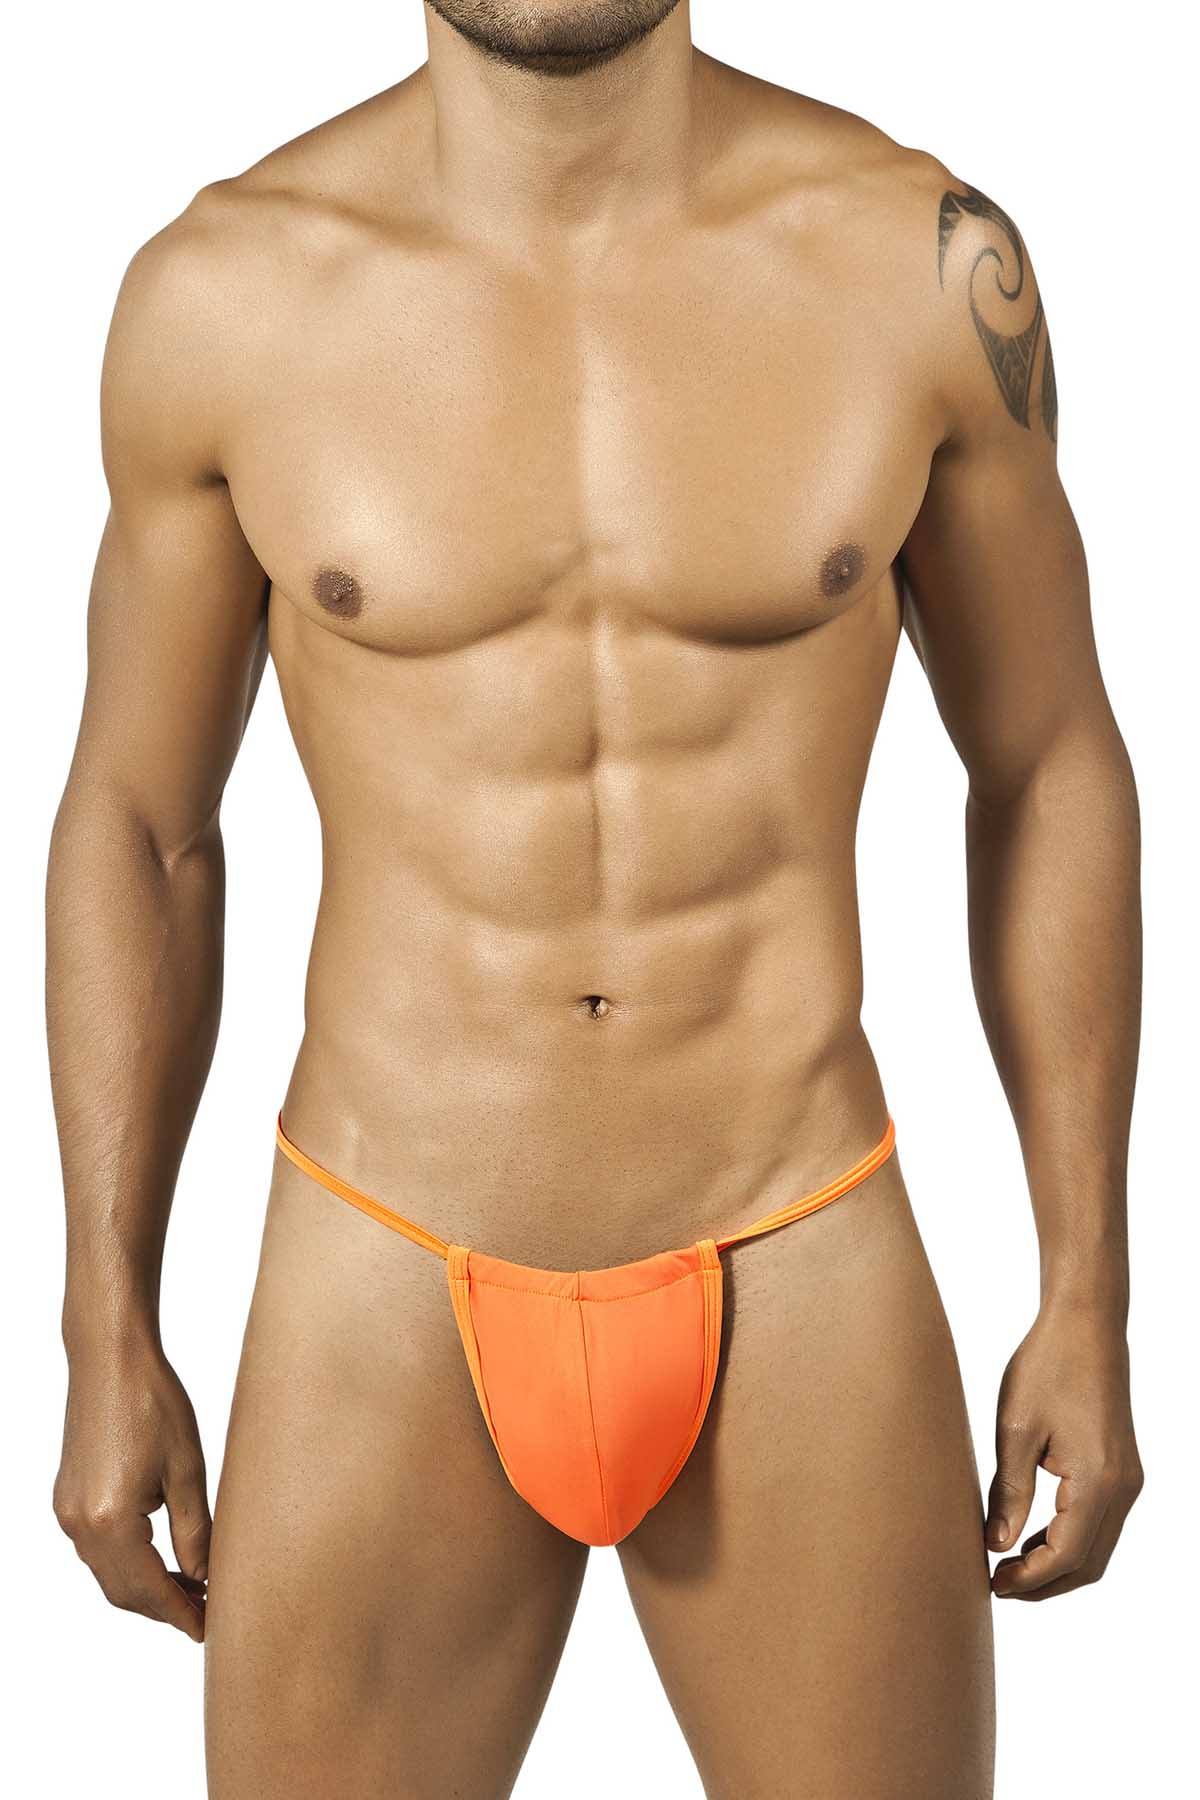 Candyman Hot-Orange Thong